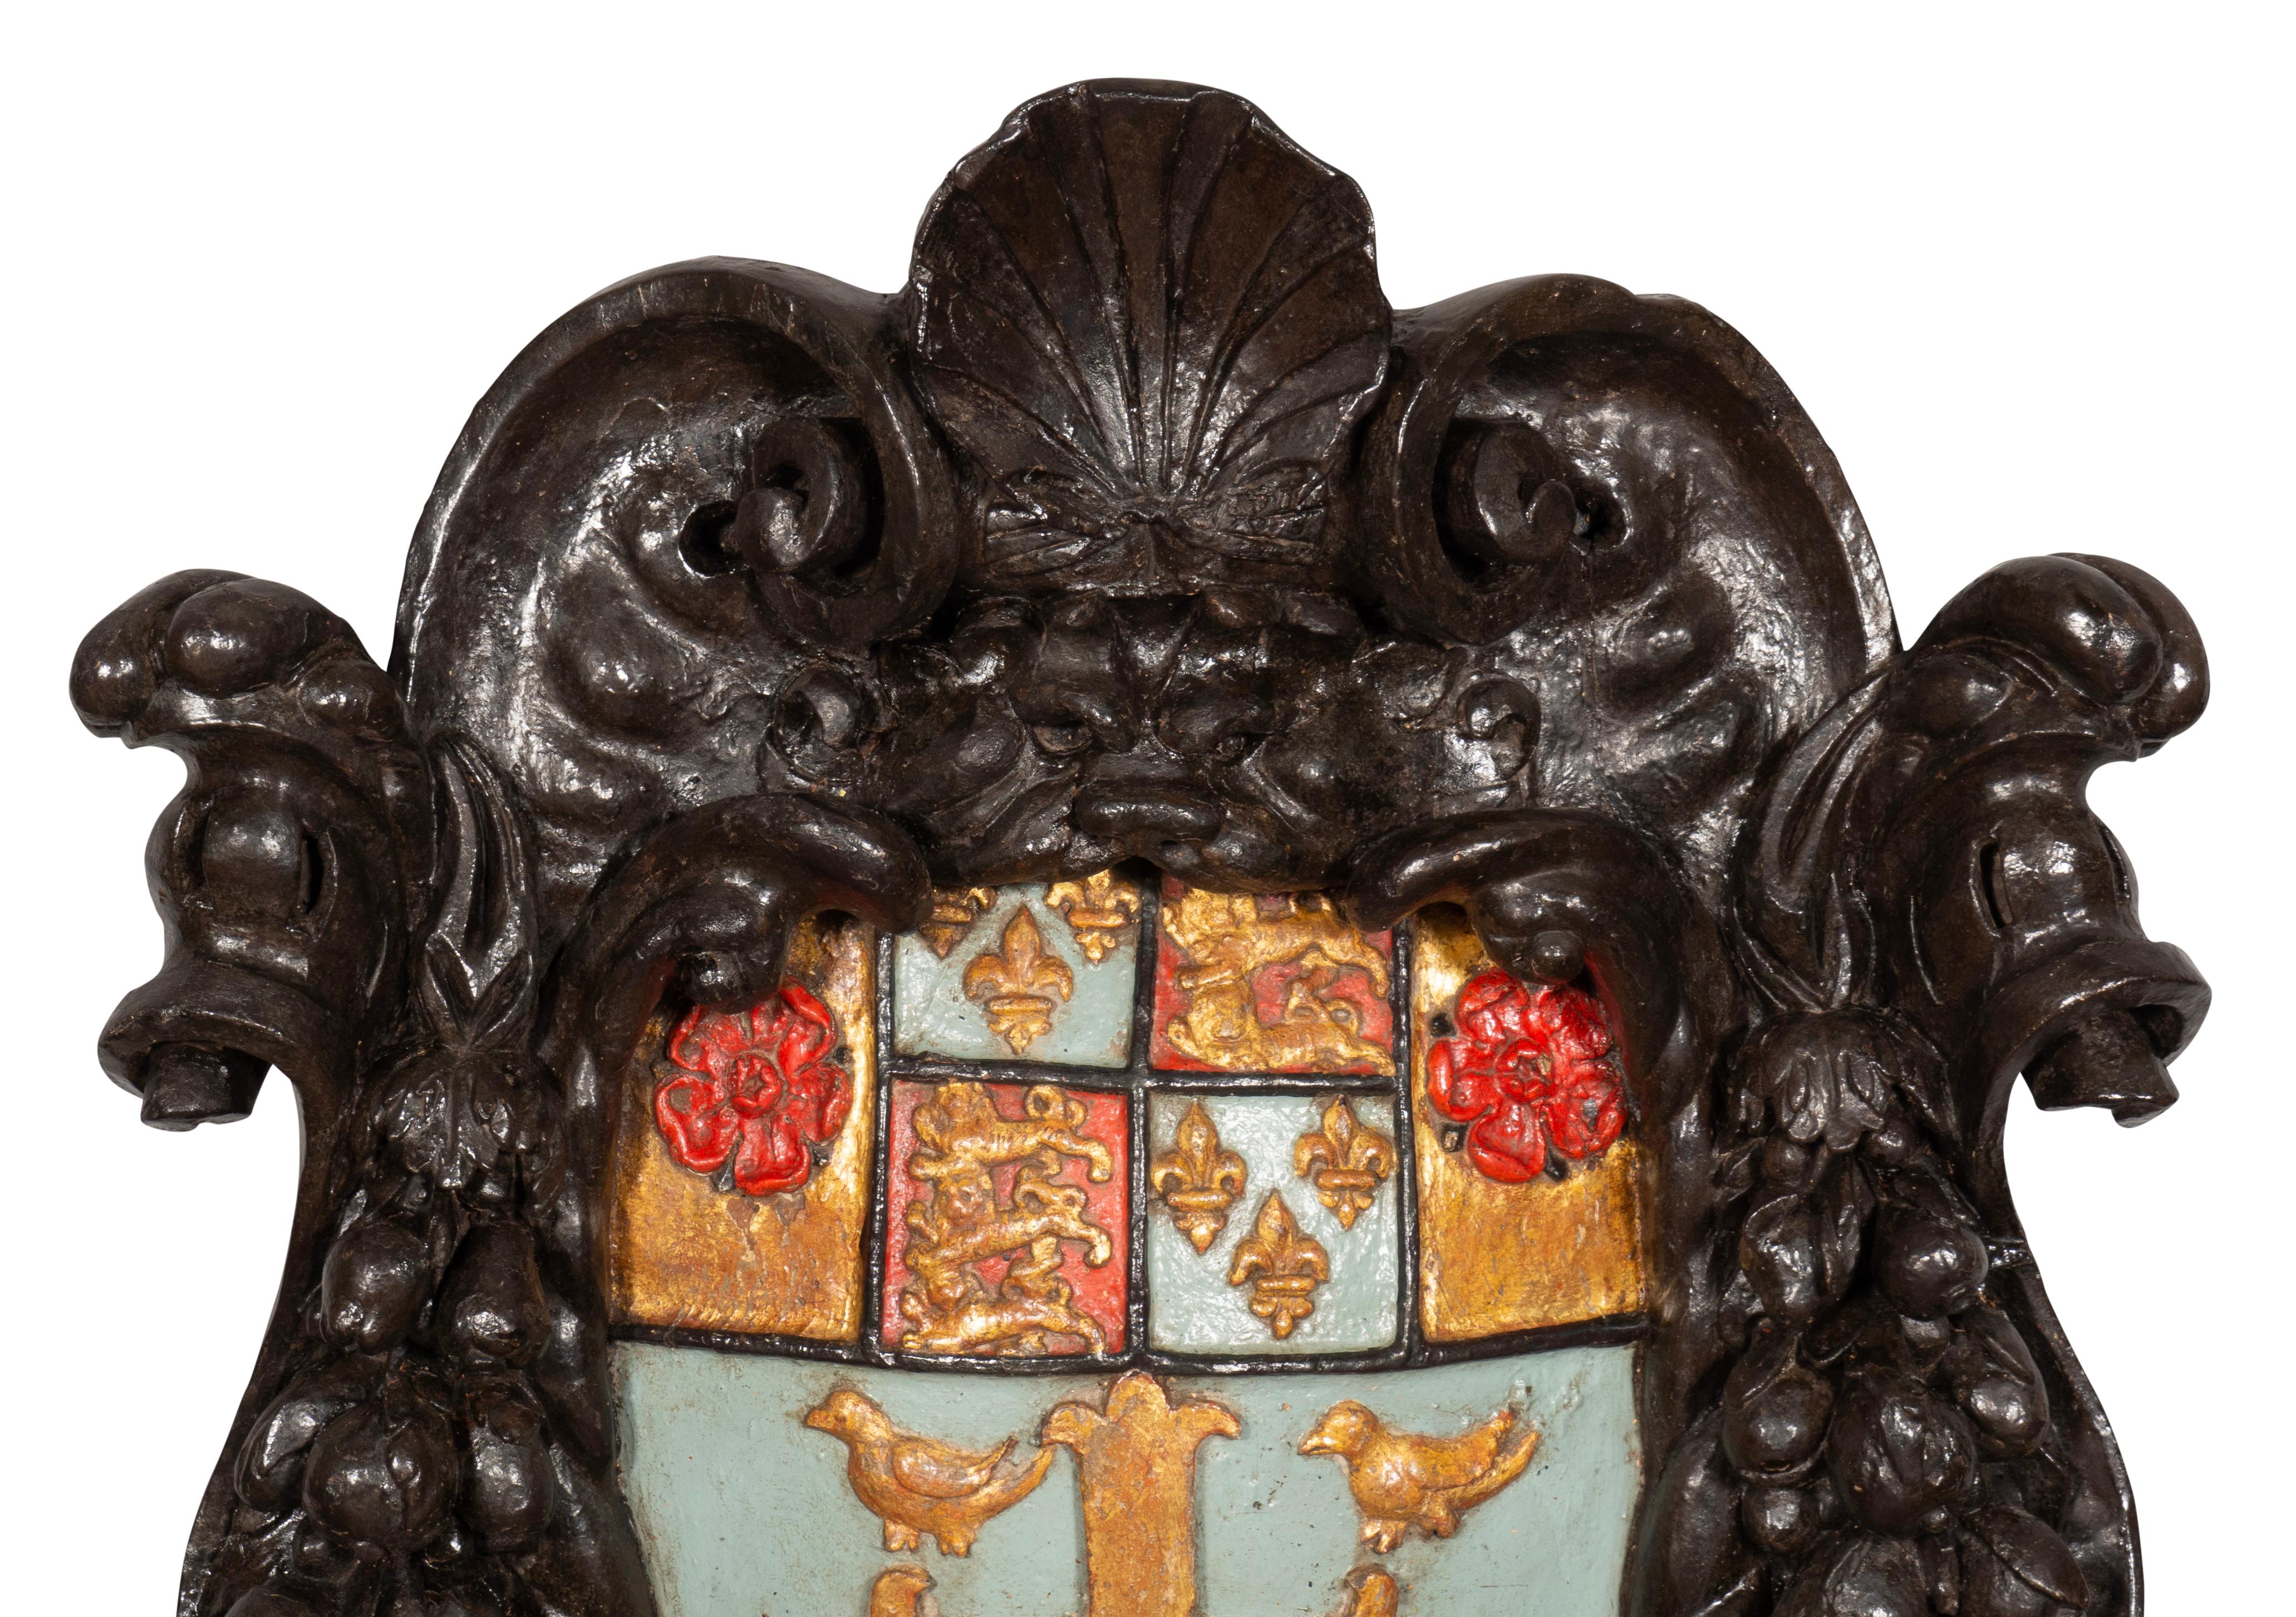 Großes Wappen mit muschel- und rollengeschnitztem Rahmen auf azurblauem Grund mit vergoldetem Wappen, das ein Kreuz mit vier Vögeln über Löwen und Fleur de lis sowie Tudor-Rosen zeigt. Der einzige Unterschied zwischen dem Wappen der Westminster